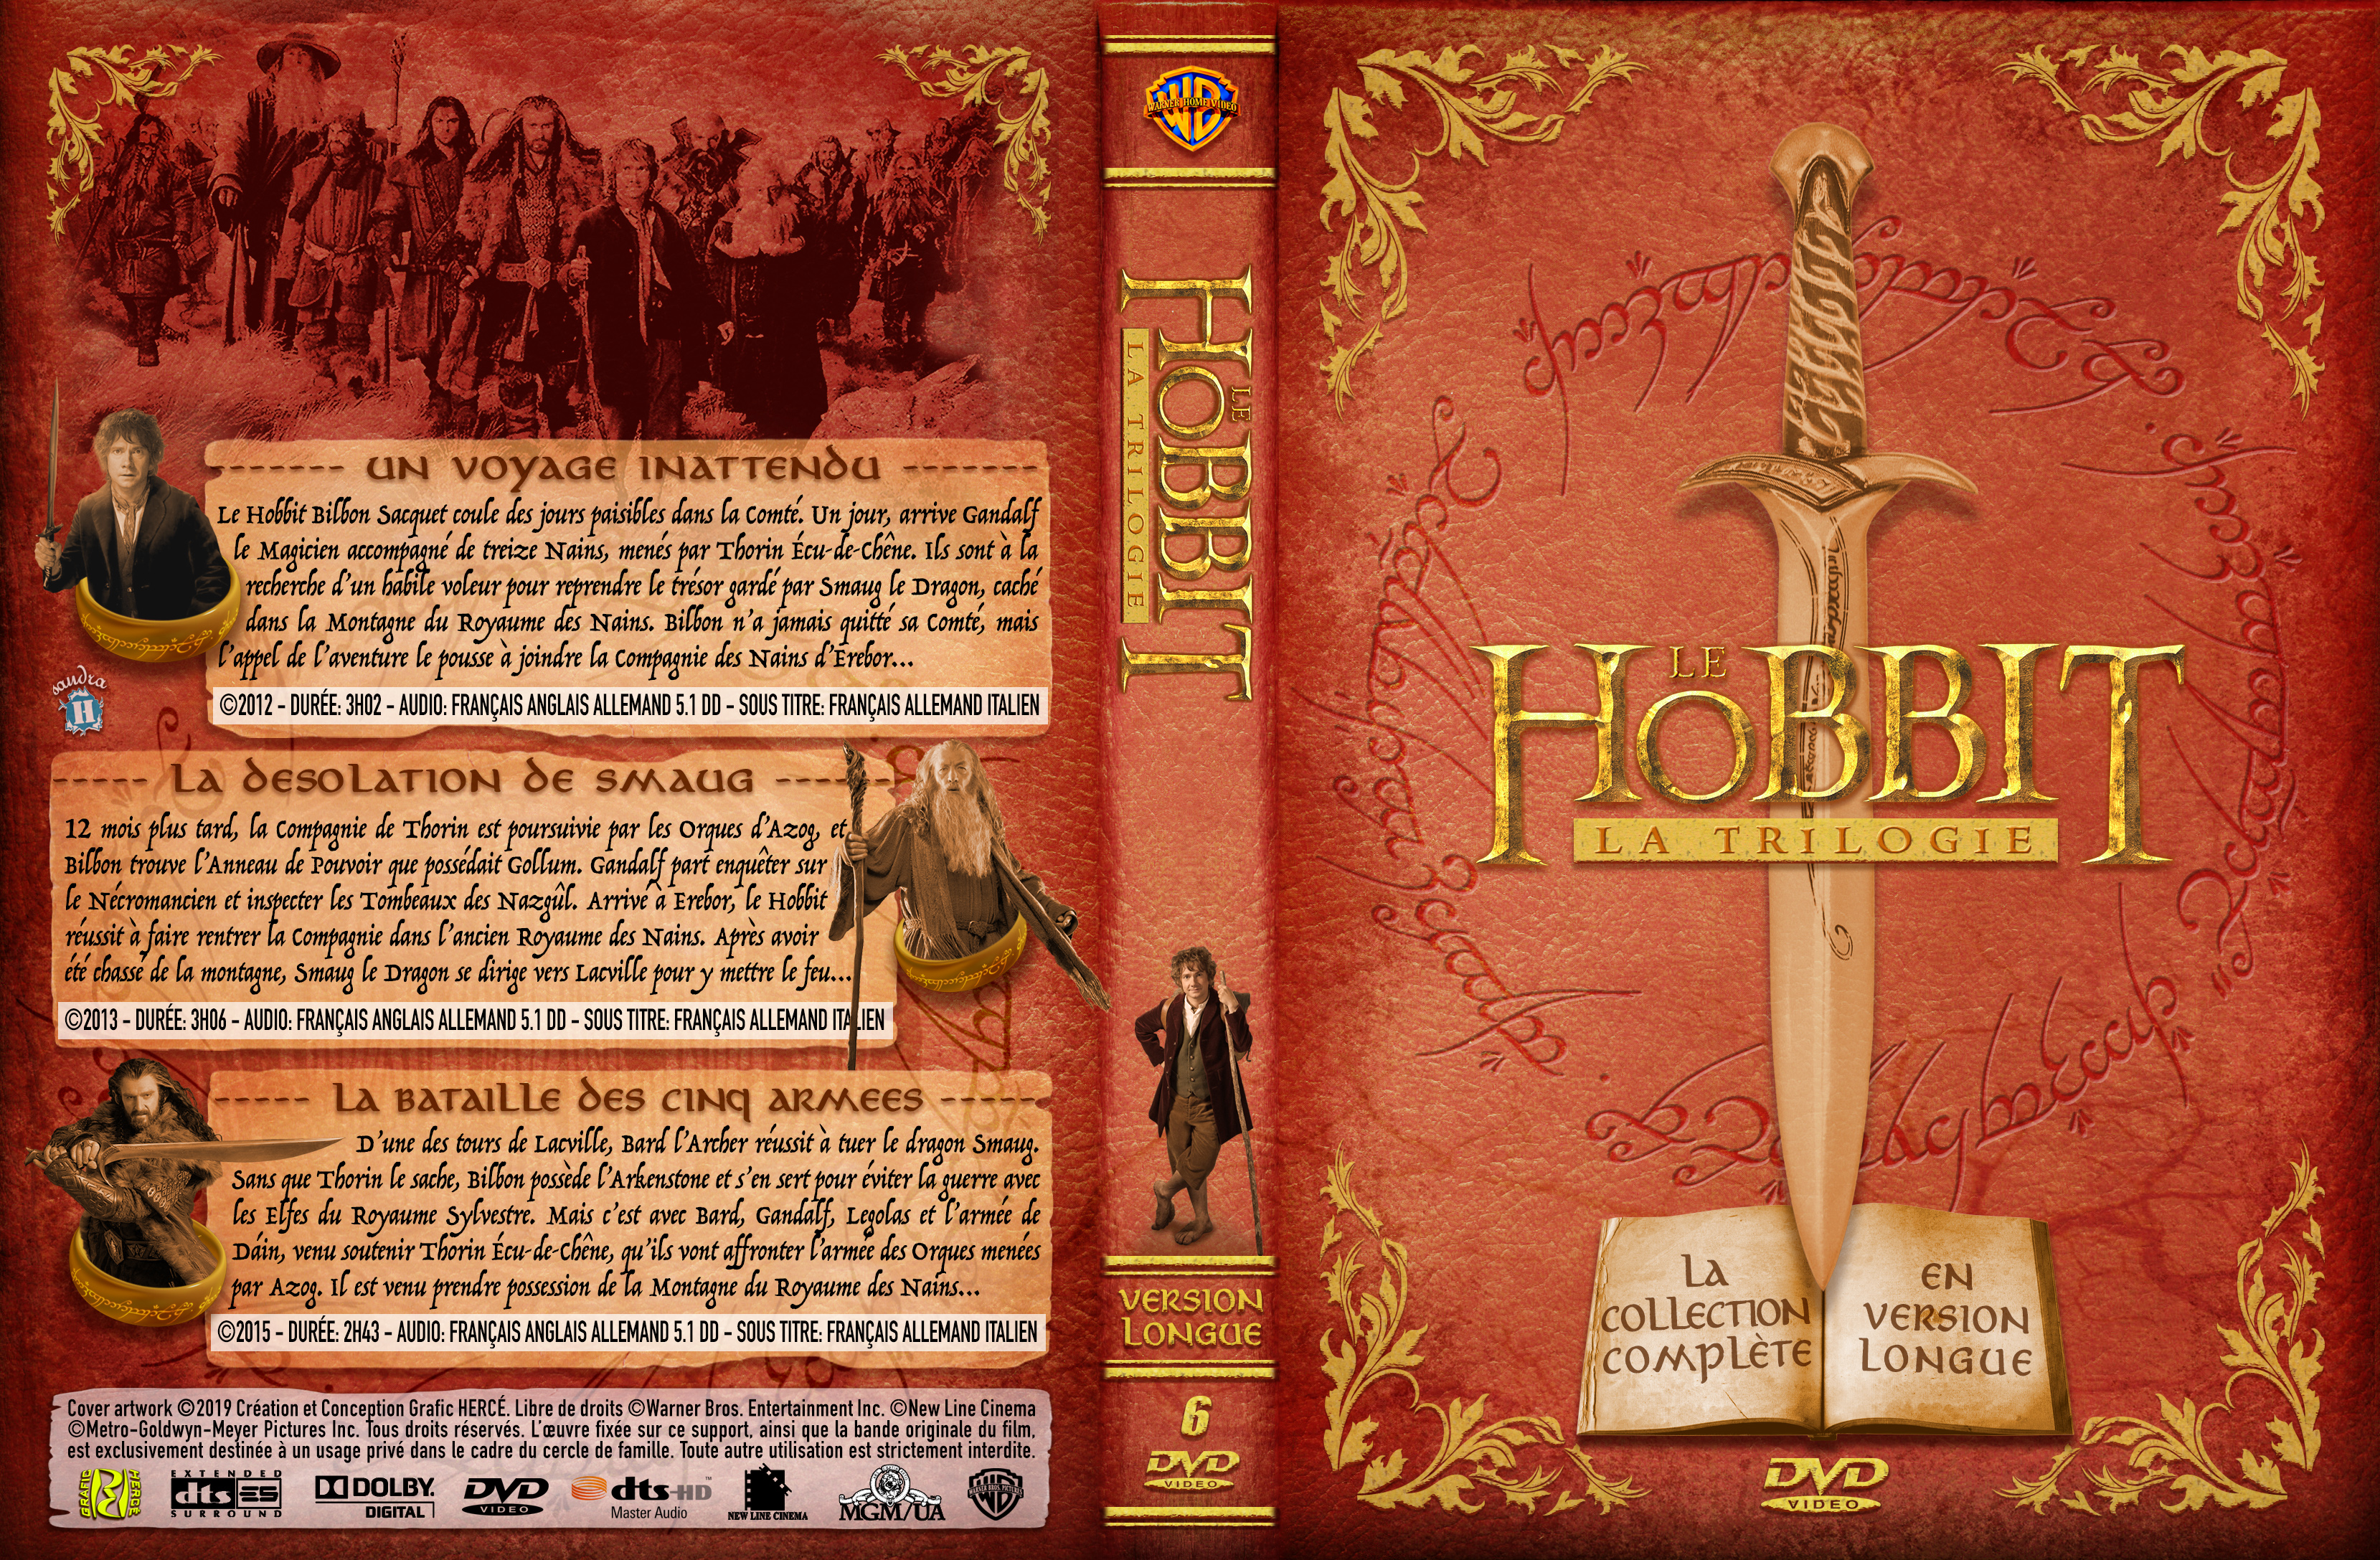 Jaquette DVD Le Hobbit Trilogie custom